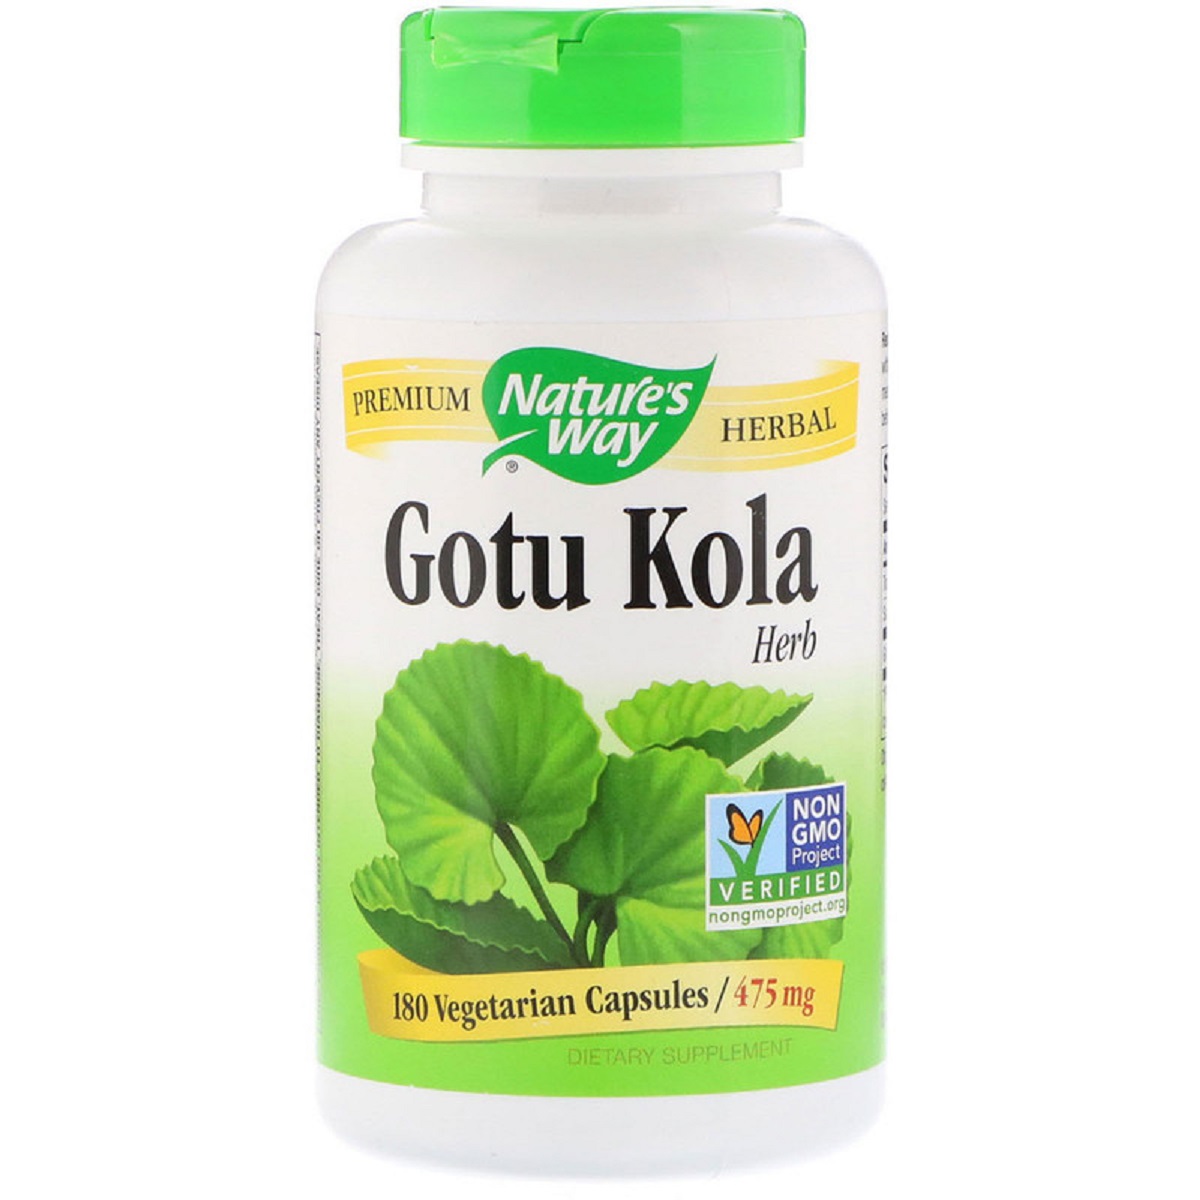 Готу кола Nature's Way Gotu Kola Herb 950 мг 180 капсул (NWY14008)